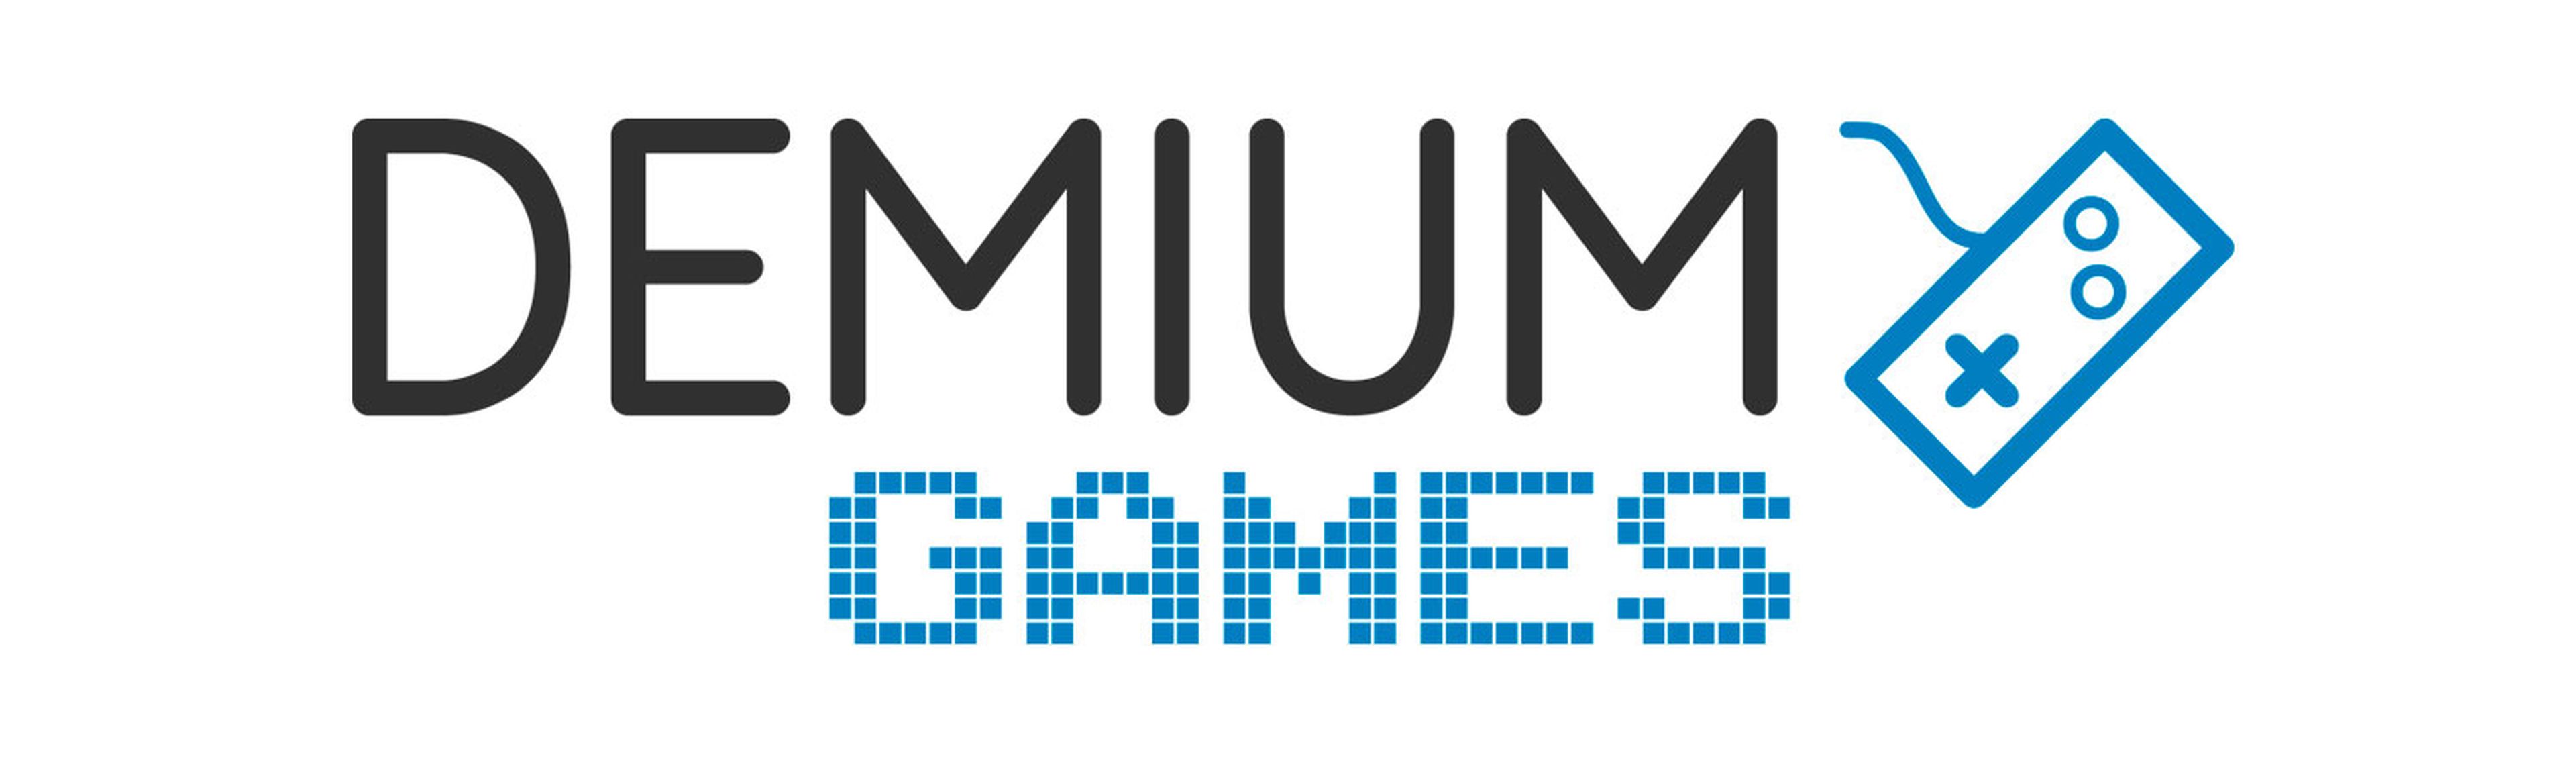 Demium Games logo